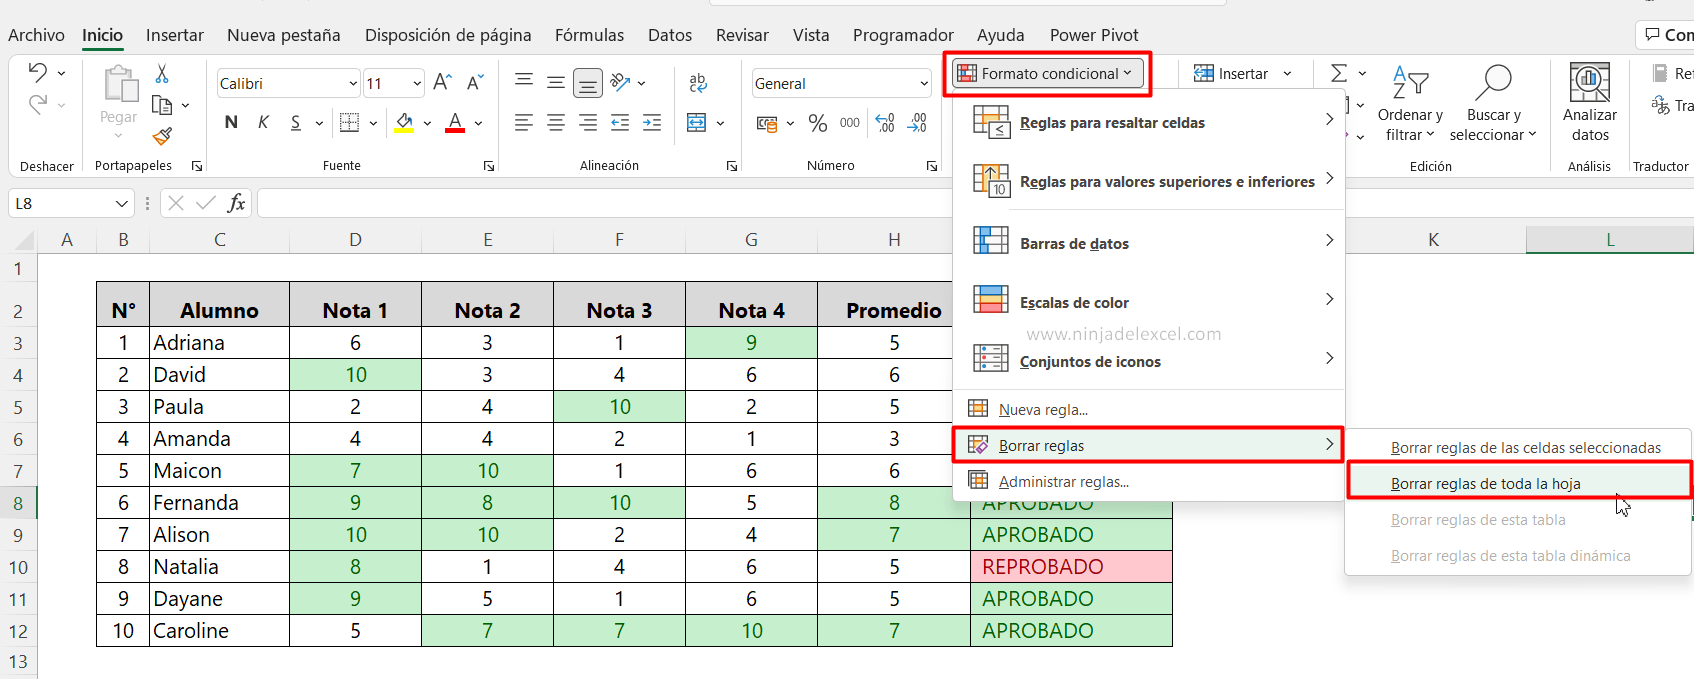 Como Borrar el Formato Condicional en Excel